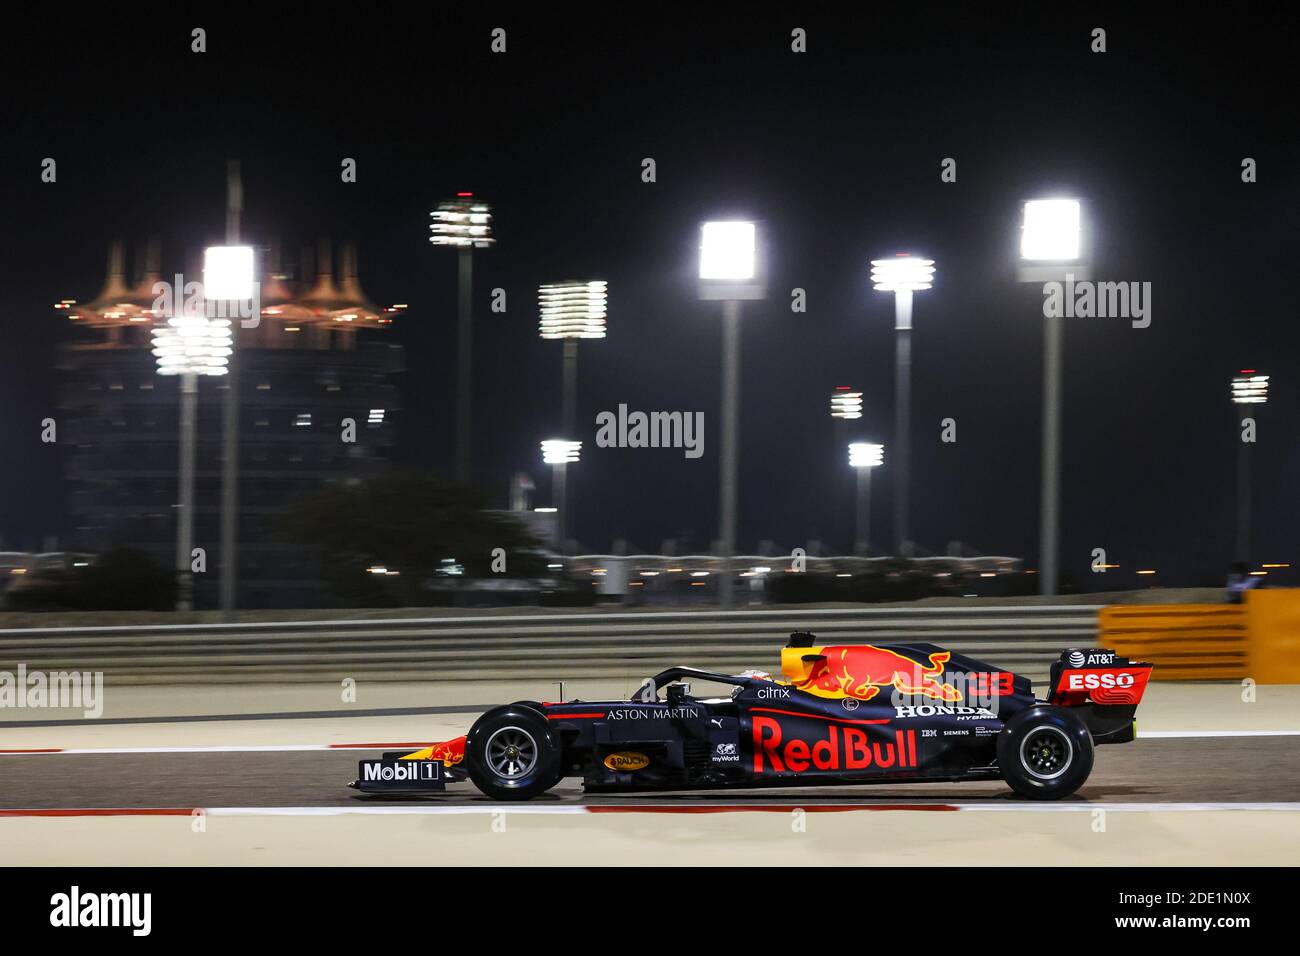 33 VERSTAPPEN Max (nld), Aston Martin Red Bull Racing Honda RB16, action pendant la Formule 1 Gulf Air Bahrain Grand Prix 2020, à partir de nov / LM Banque D'Images